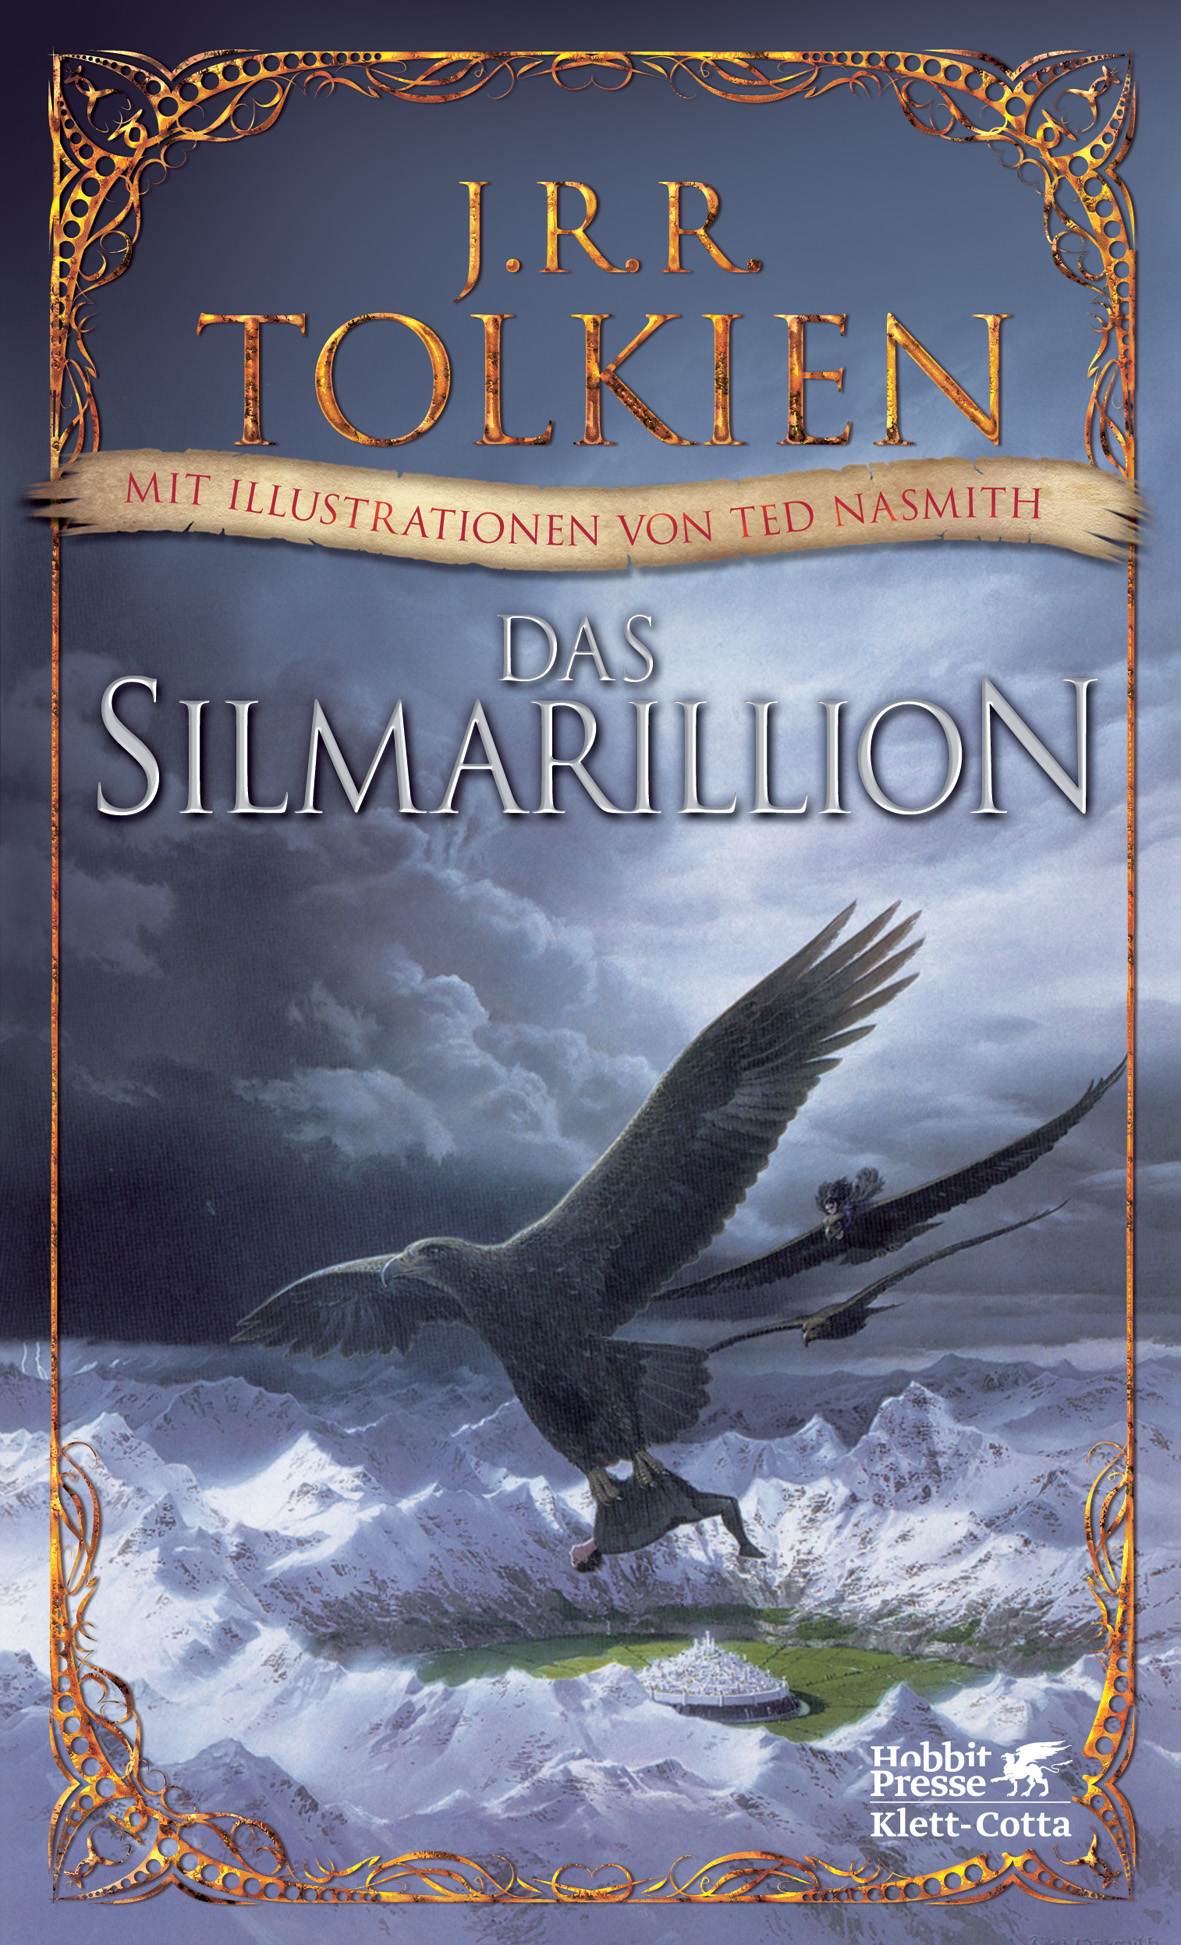 Das Silmarillion mit Ted Nasmith Illustrationen nun auch auf Deutsch